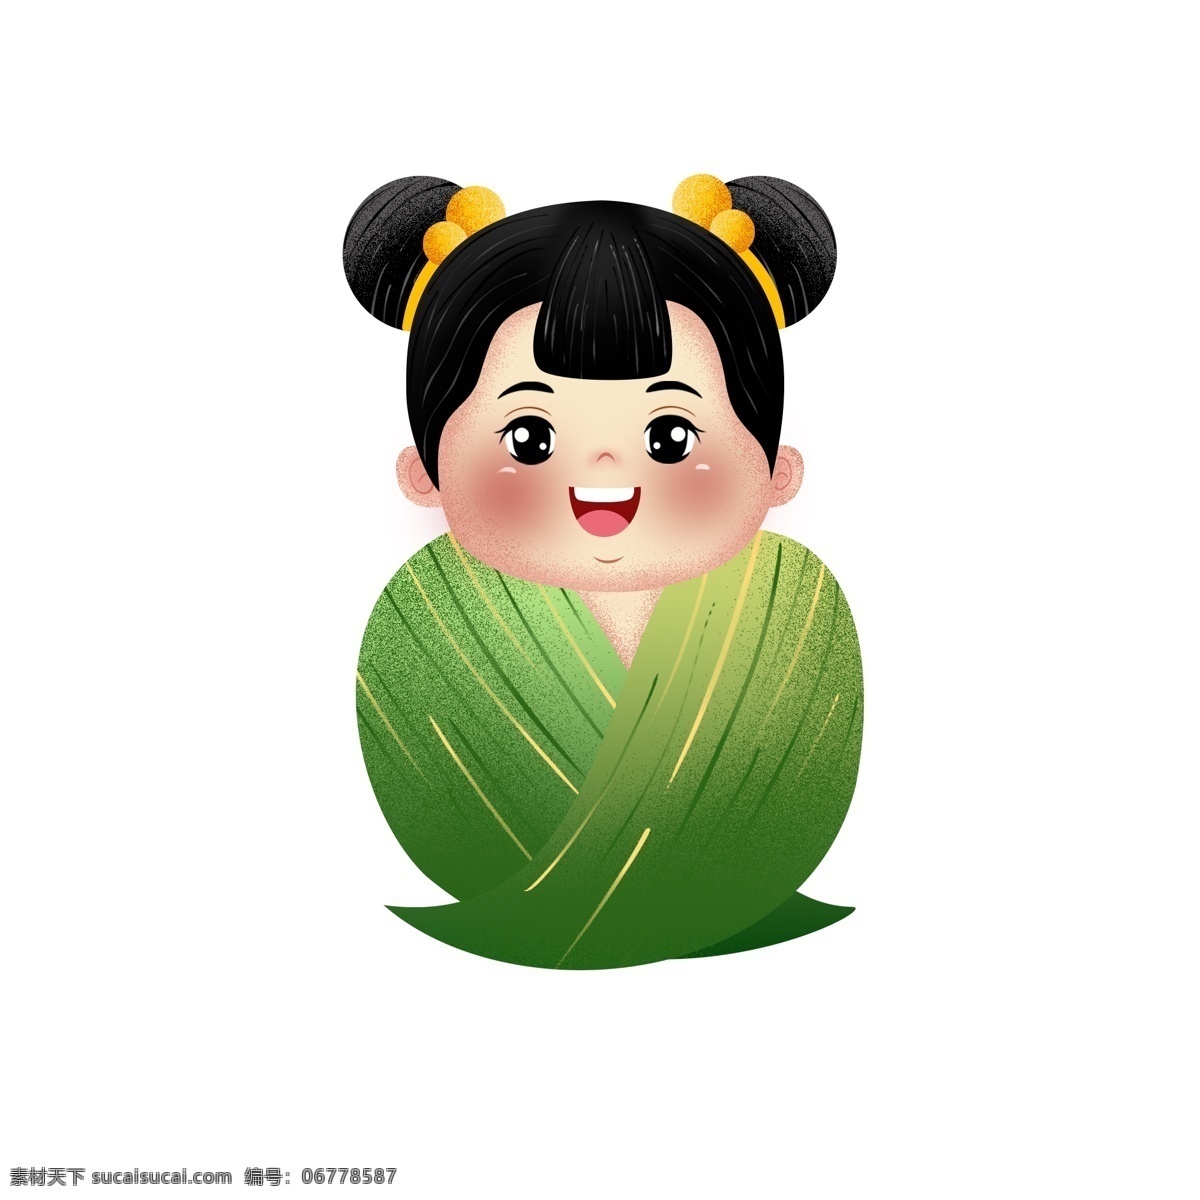 创意 可爱 粽子 女孩 彩绘 端午节 五月初五 传统节日 插画